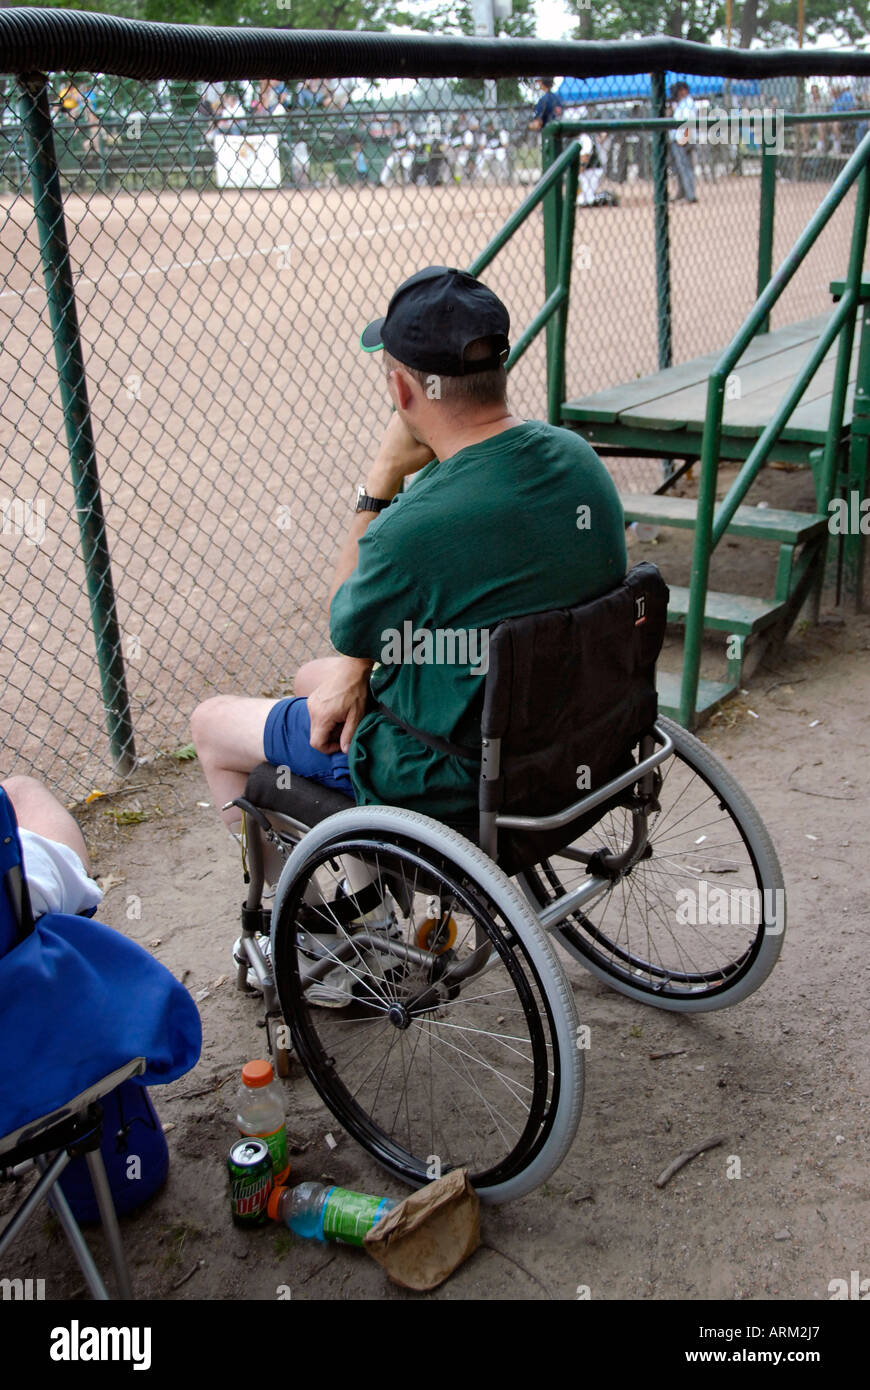 Montres homme handicapé à un match de baseball alors qu'il était assis dans un fauteuil roulant Banque D'Images